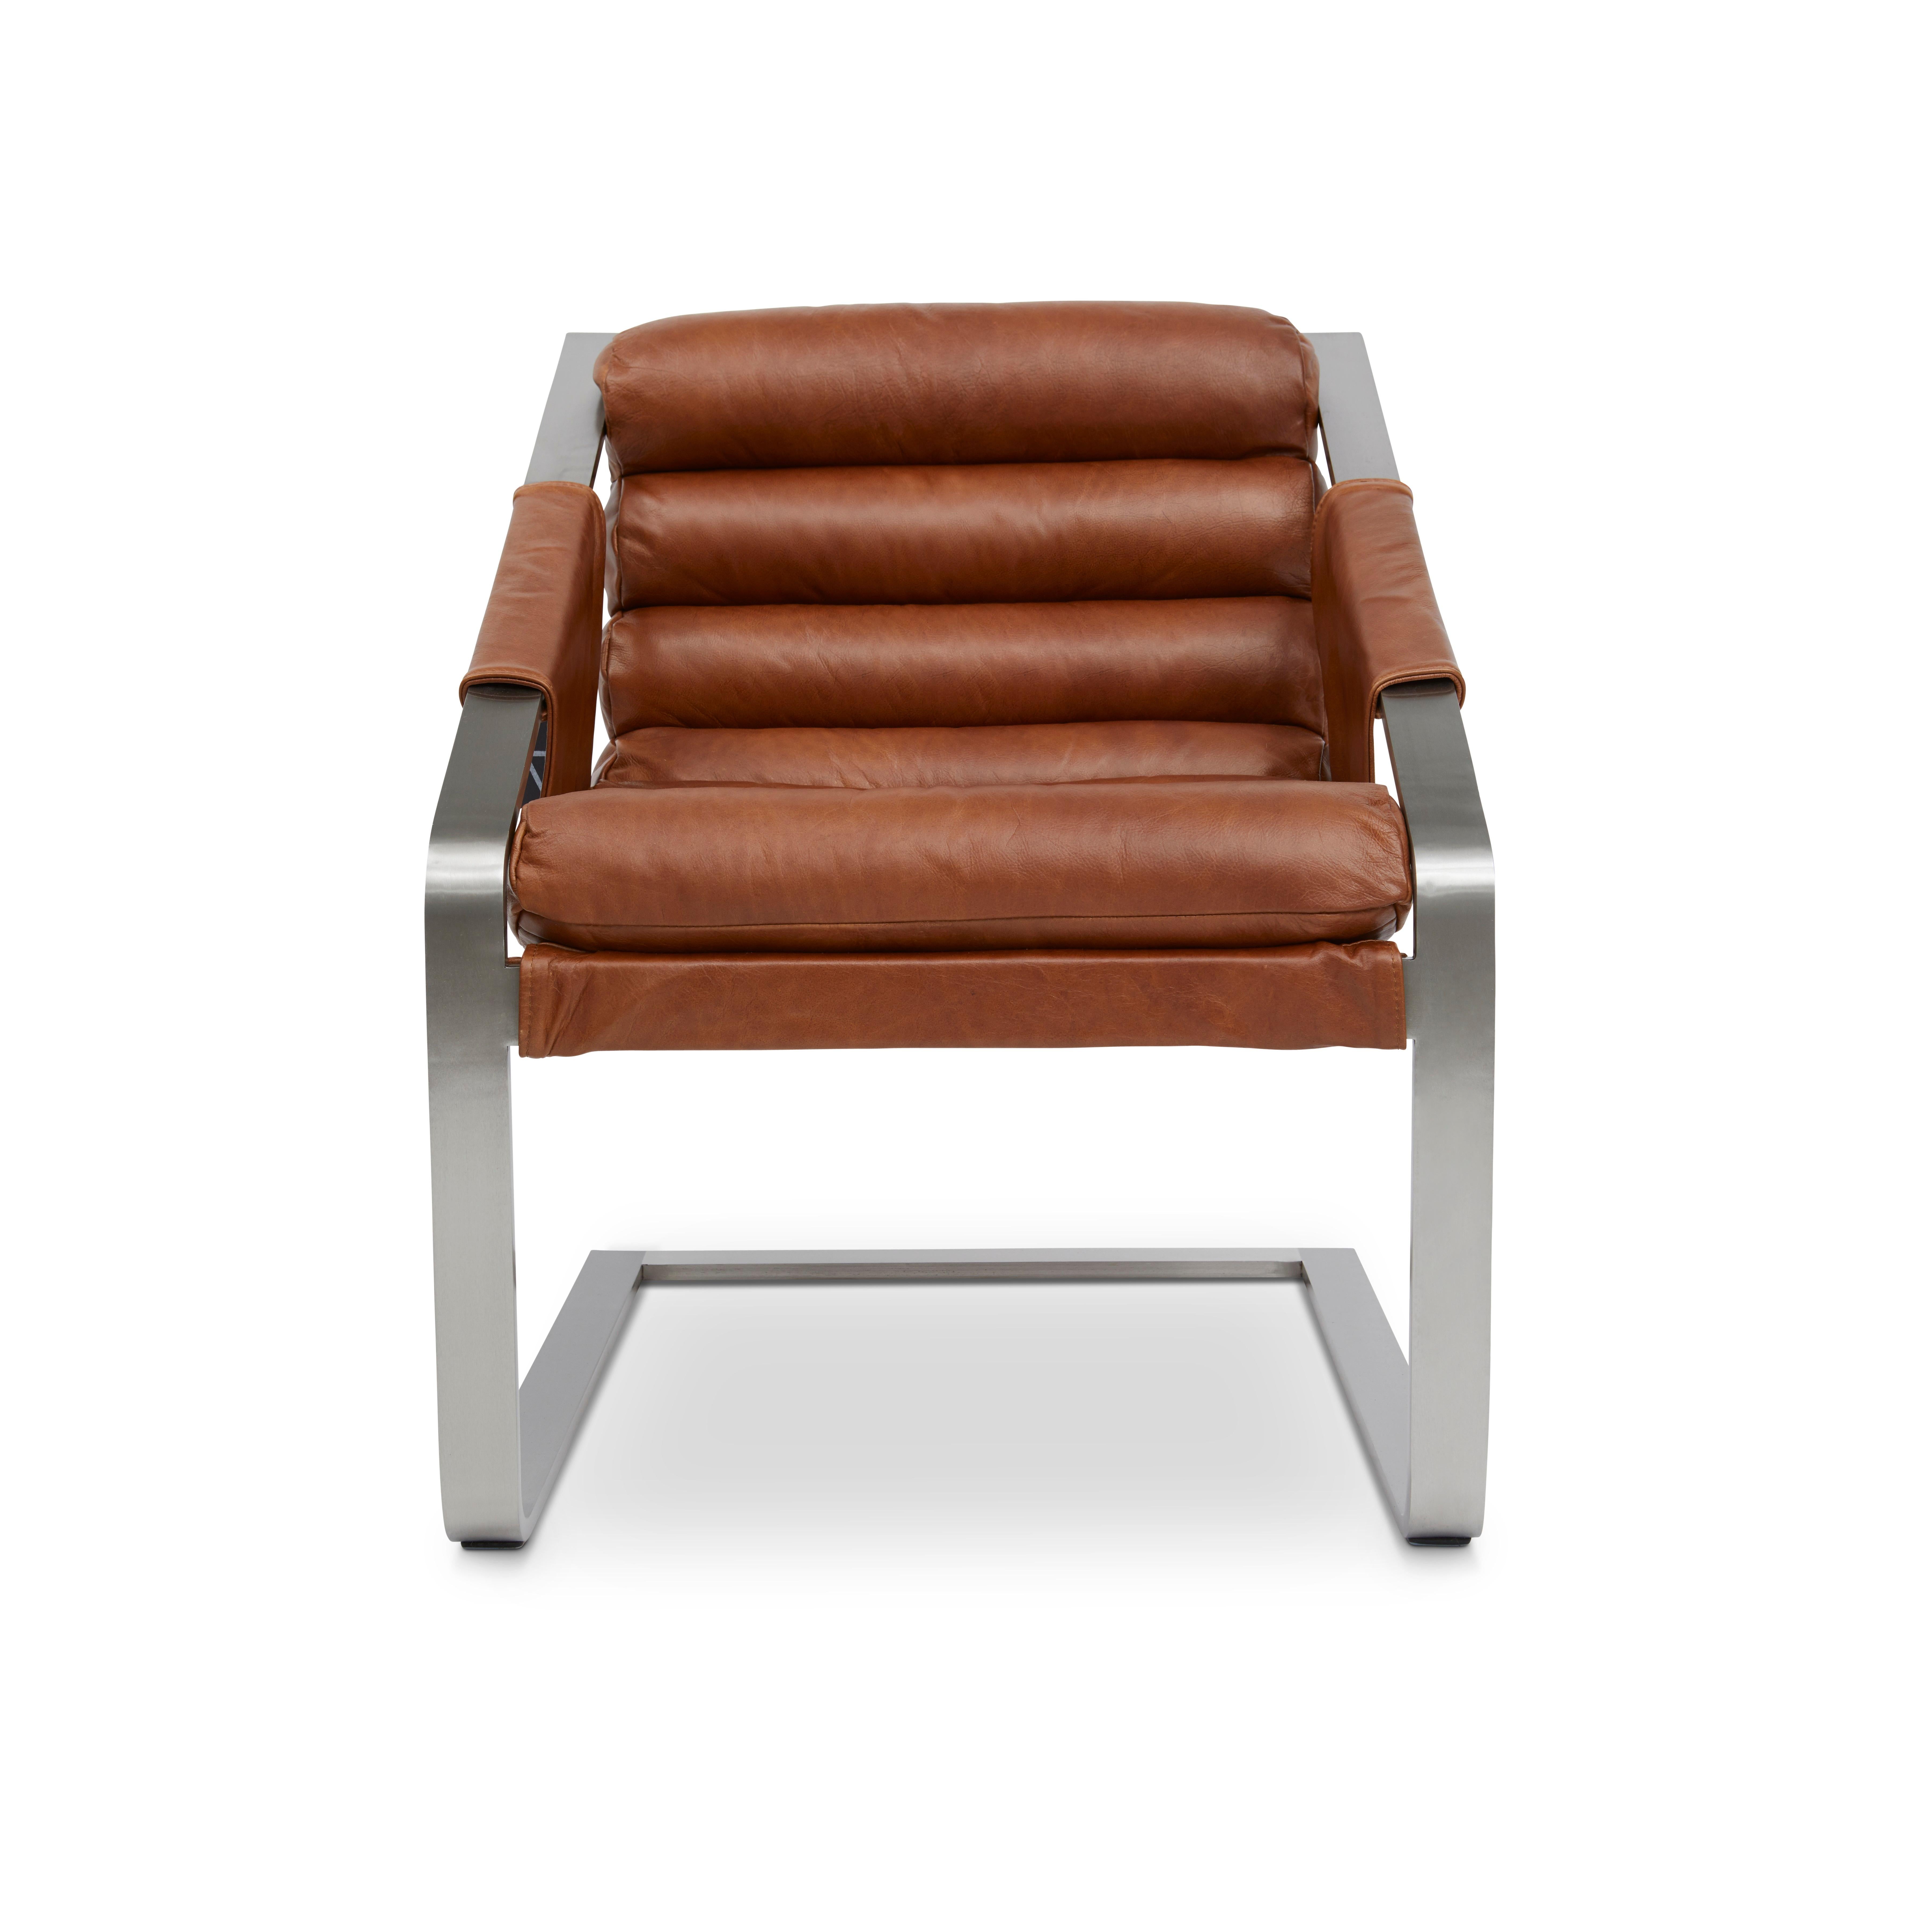 La chaise Patine allie le métal moderne à la finesse d'une époque révolue. Avec leur design cannelé, les rouleaux sont appréciés pour leur confort et le contraste chic entre le cuir riche et l'acier inoxydable massif.

Caractéristiques
- D'une forme